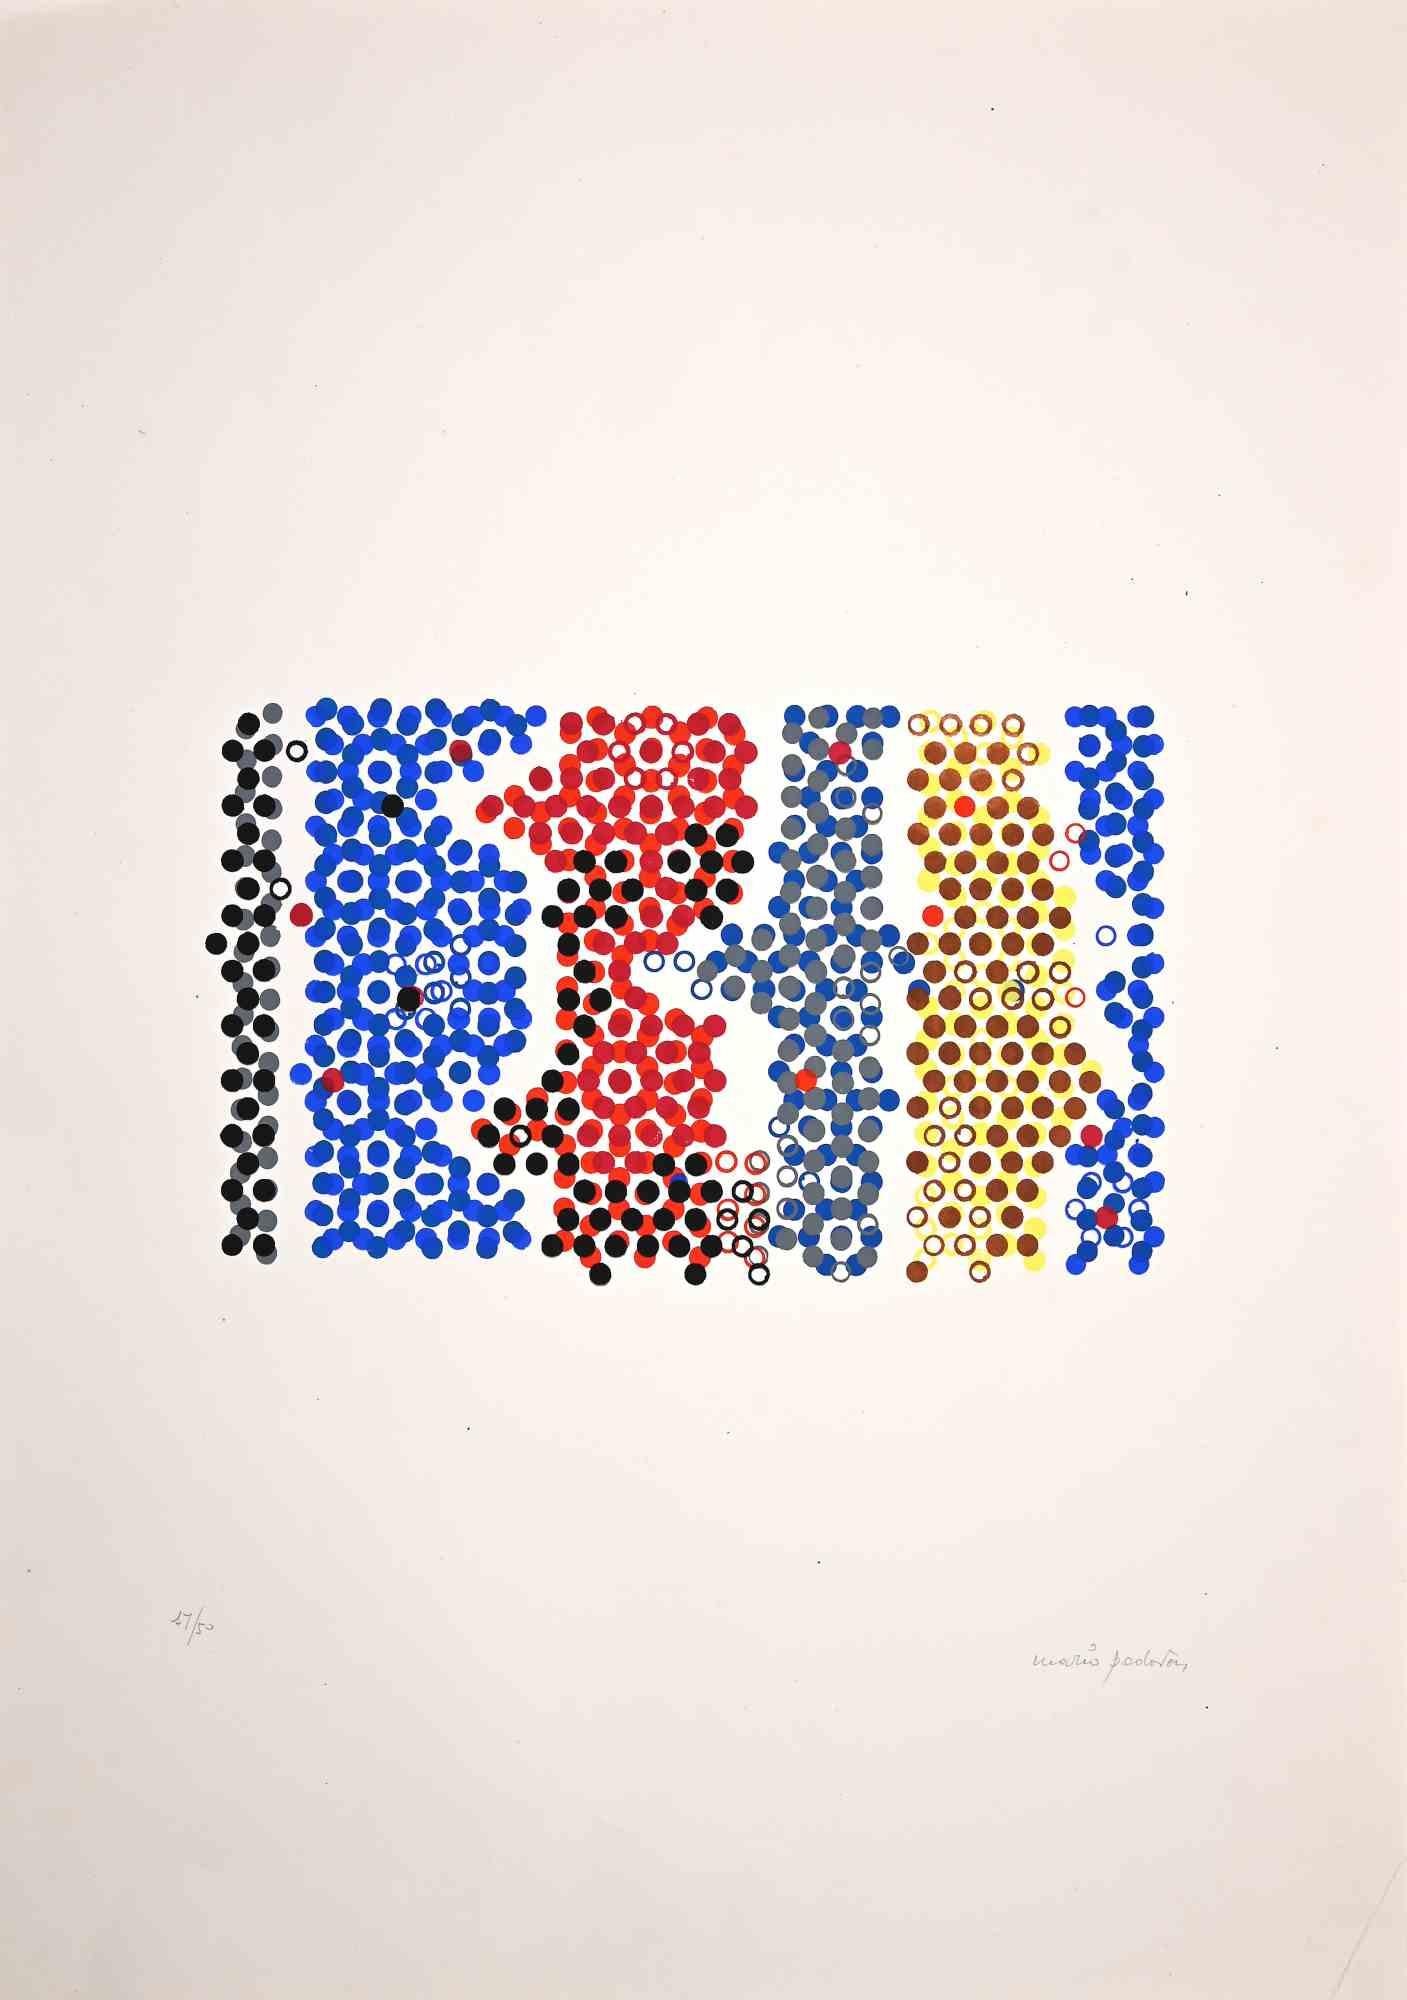 Gewundene Geometrien  ist eine farbige Original-Lithographie von Mario Padovan aus den 1970er Jahren.

Handsigniert mit Bleistift unten rechts. Links unten mit Bleistift nummeriert. Ausgabe 12/50.

Guter Zustand, abgesehen von kleinen Falten an den